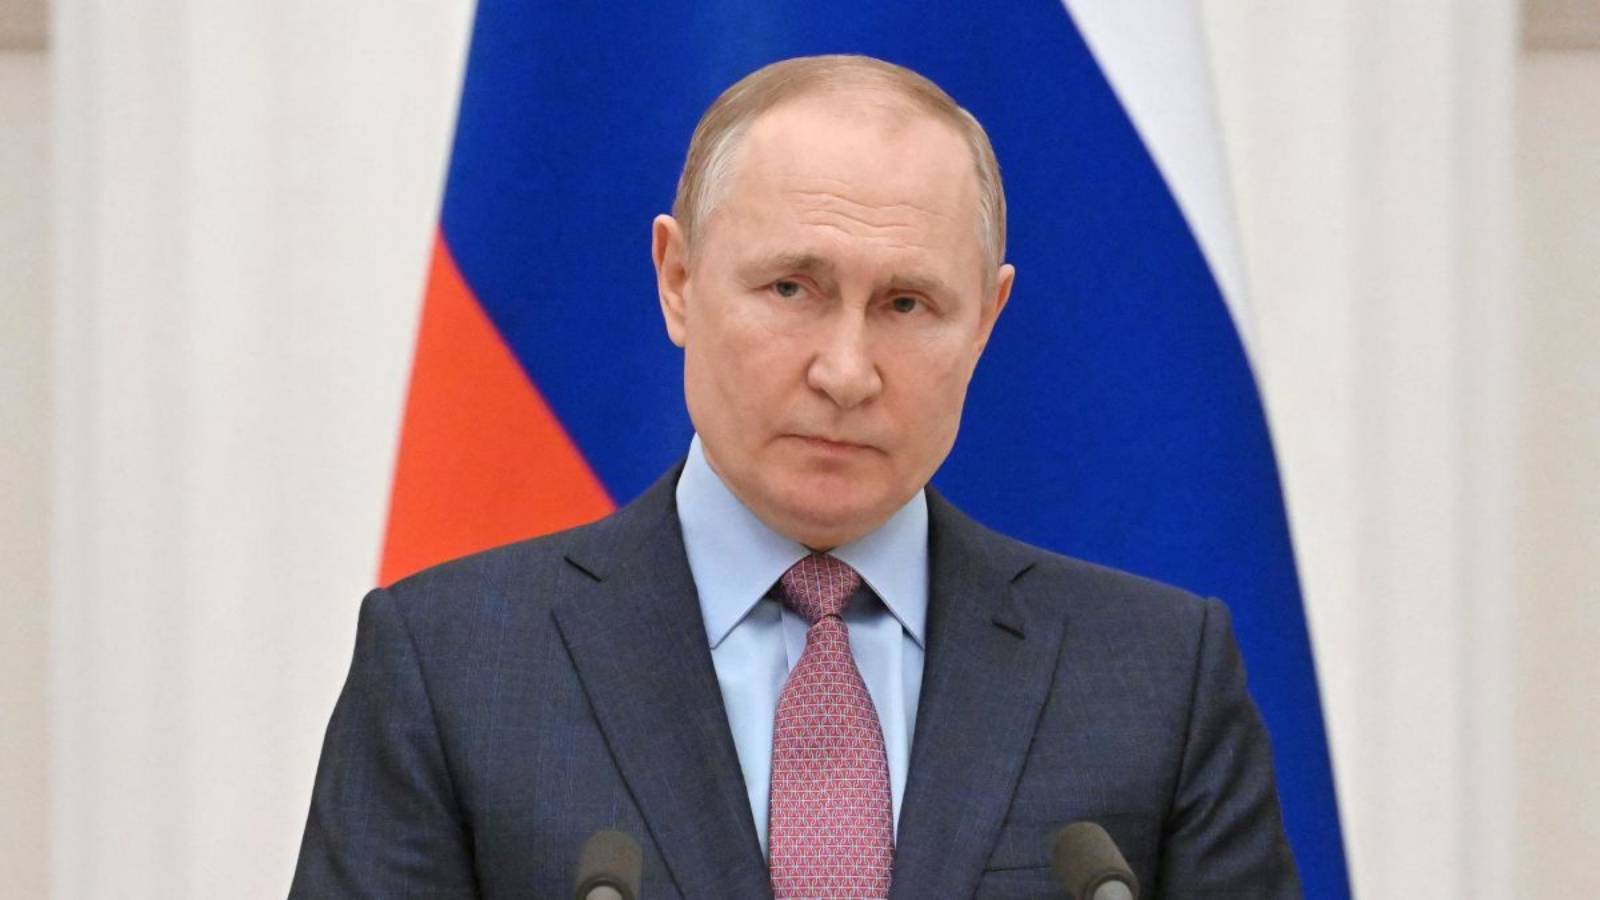 Vladimir Putinin päätös hyökätä Transnistriaan